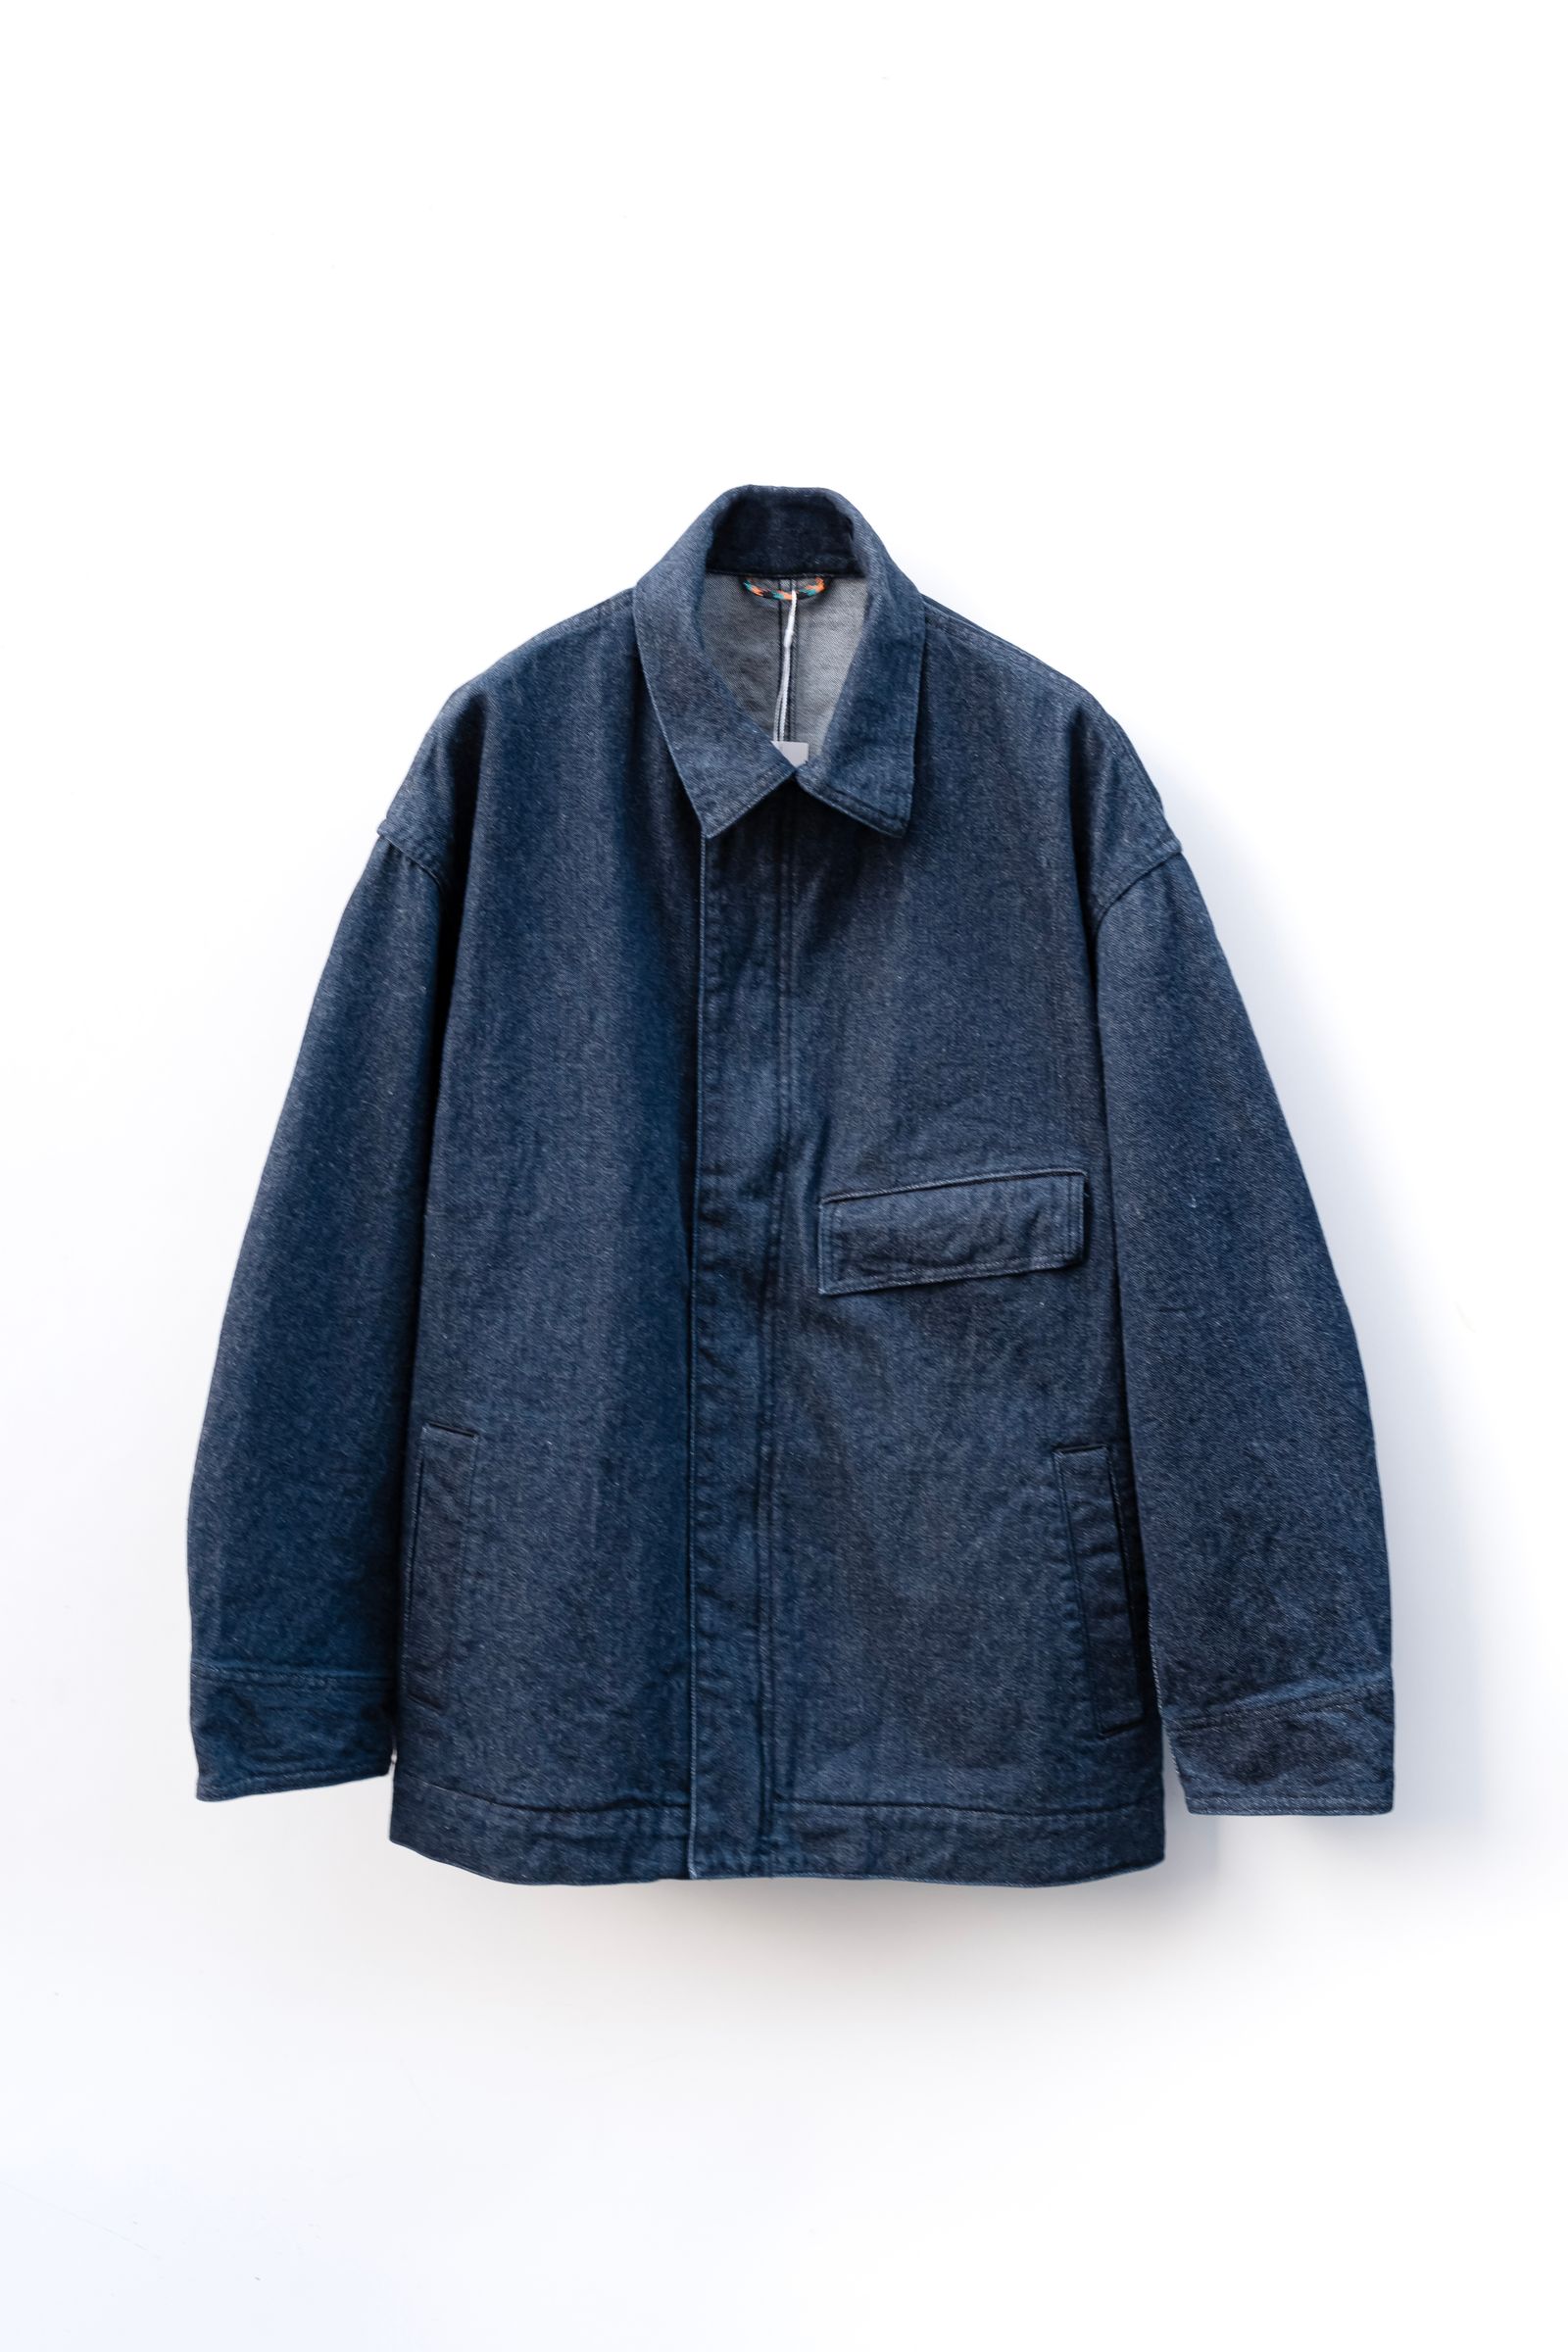 roundabout - Denim Chore Jacket / Indigo Blue | Retikle Online Store